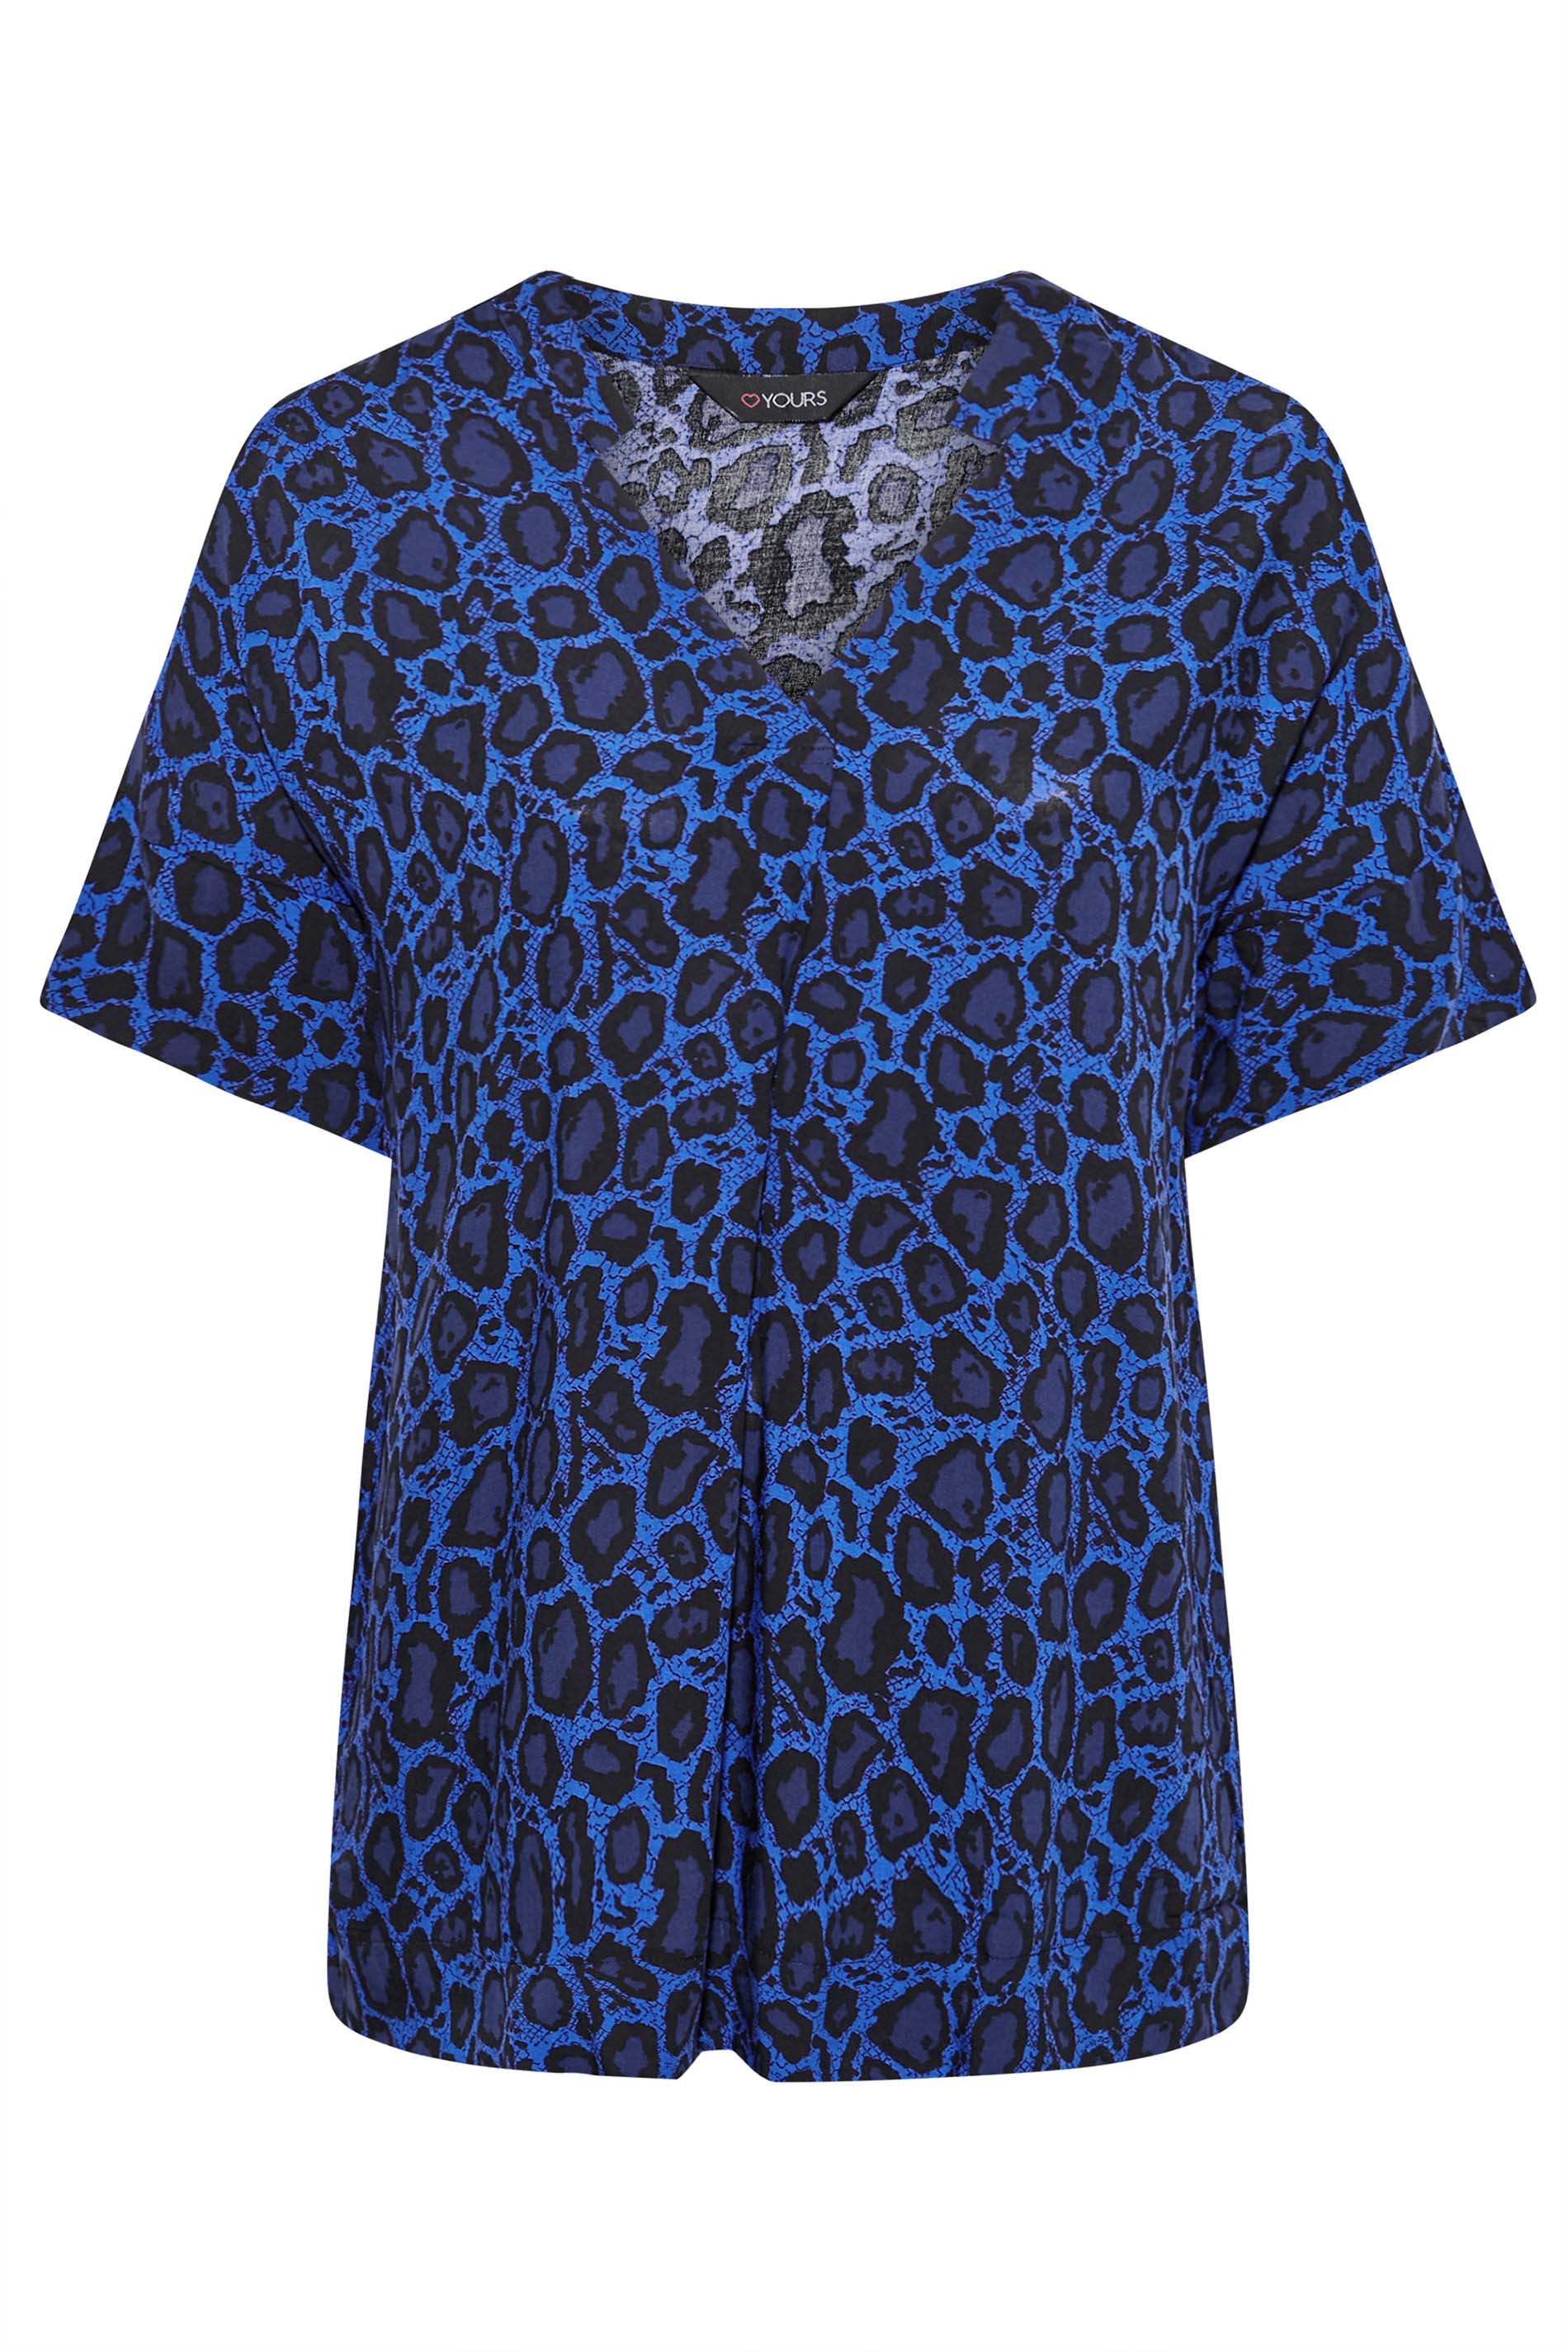 Plus Size Blue Leopard Print V-Neck Shirt